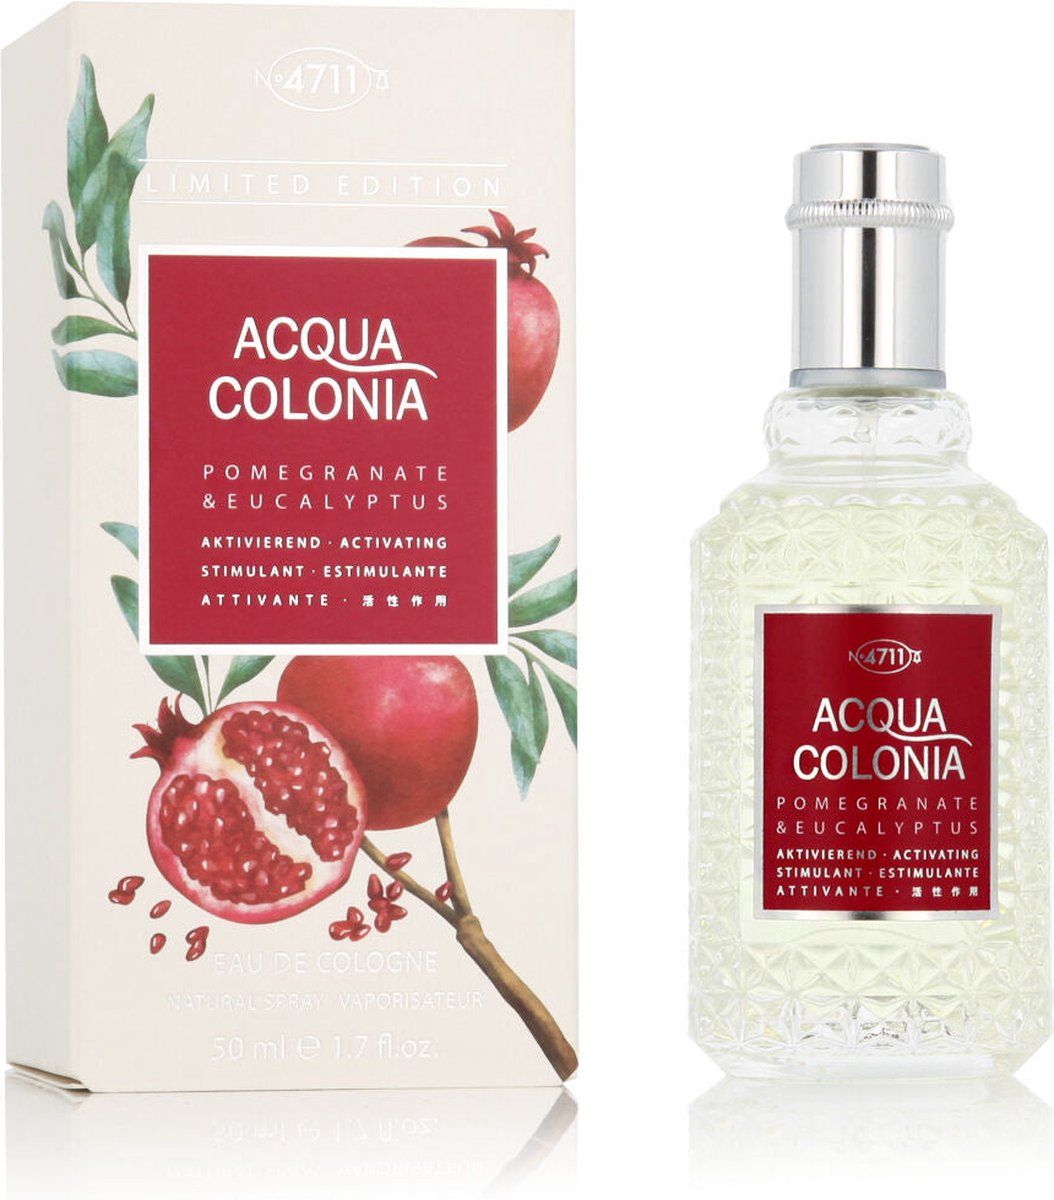 4711 Acqua Colonia Pomegranate&Eucalyptus Eau de Cologne 50 ml